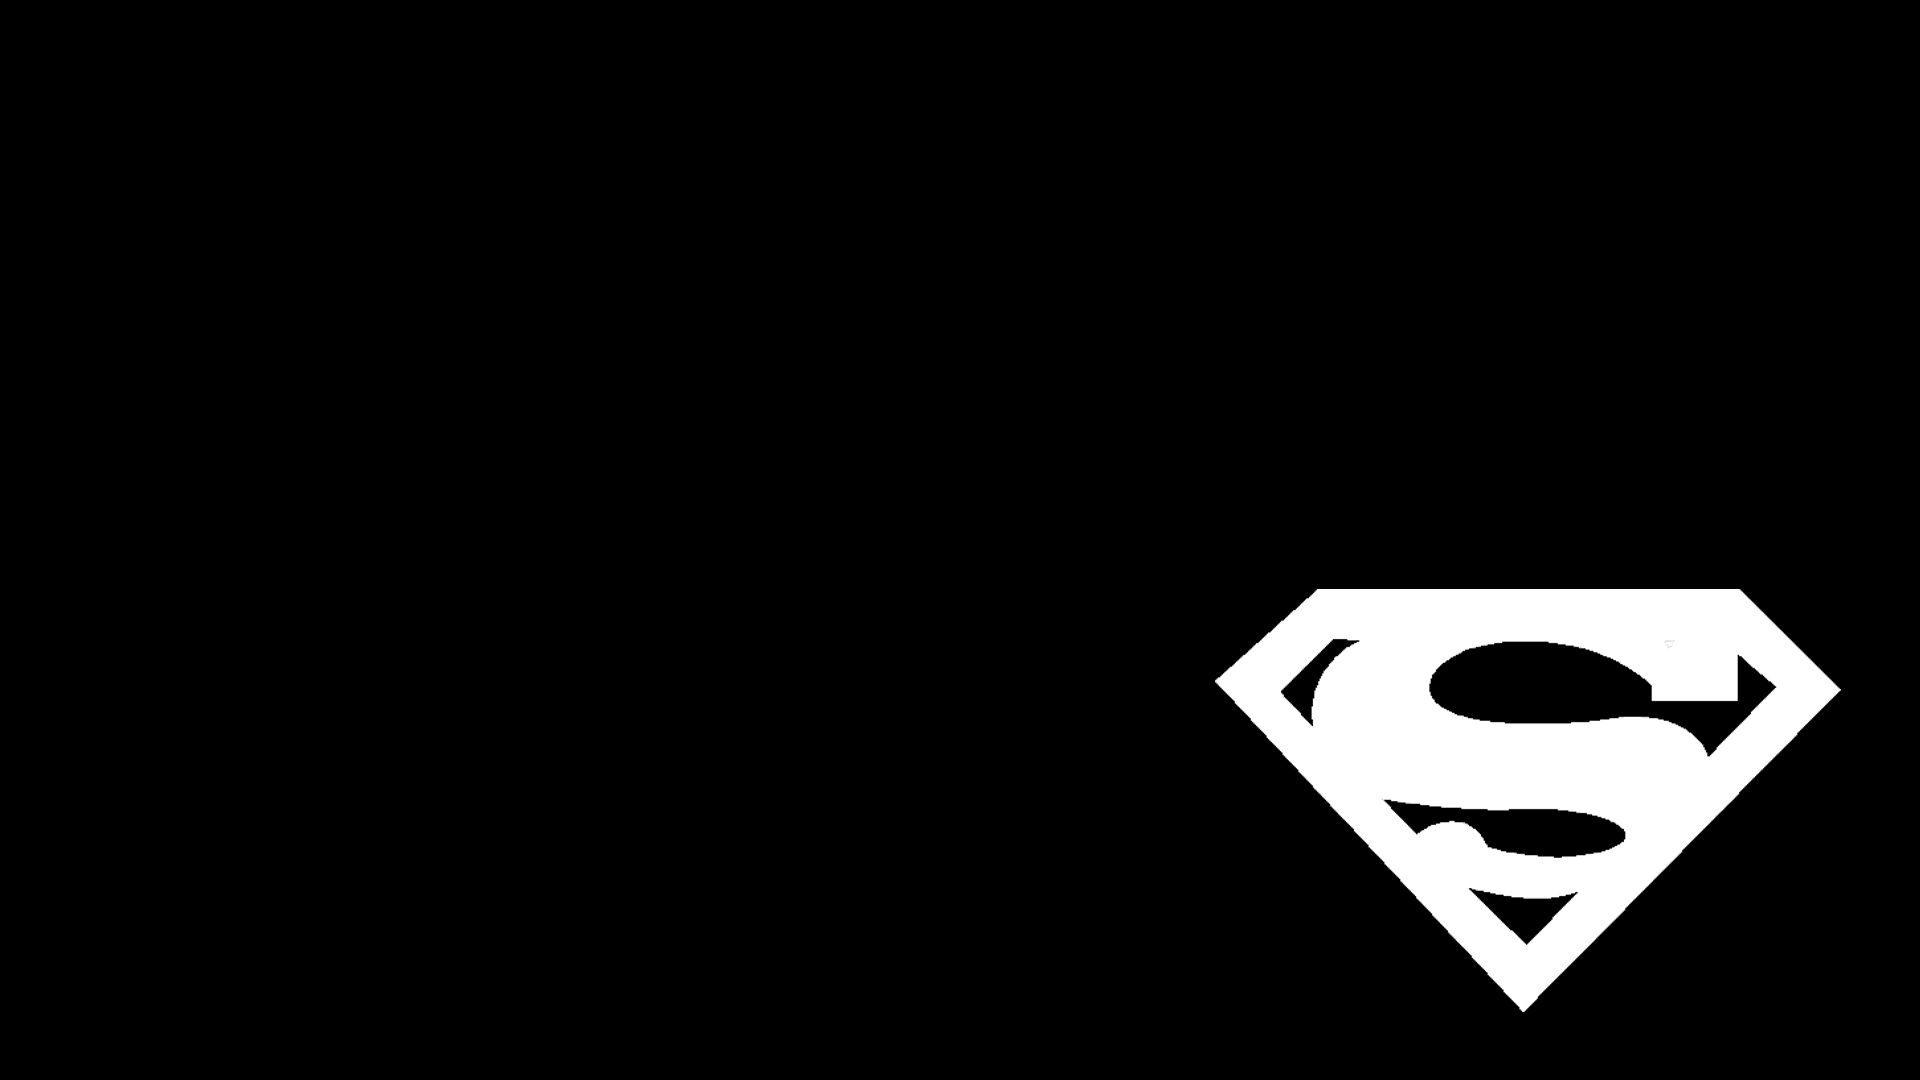 Black and White Superman Logo - Black And White Superman Logo Wallpaper For Desktops And Laptops ...